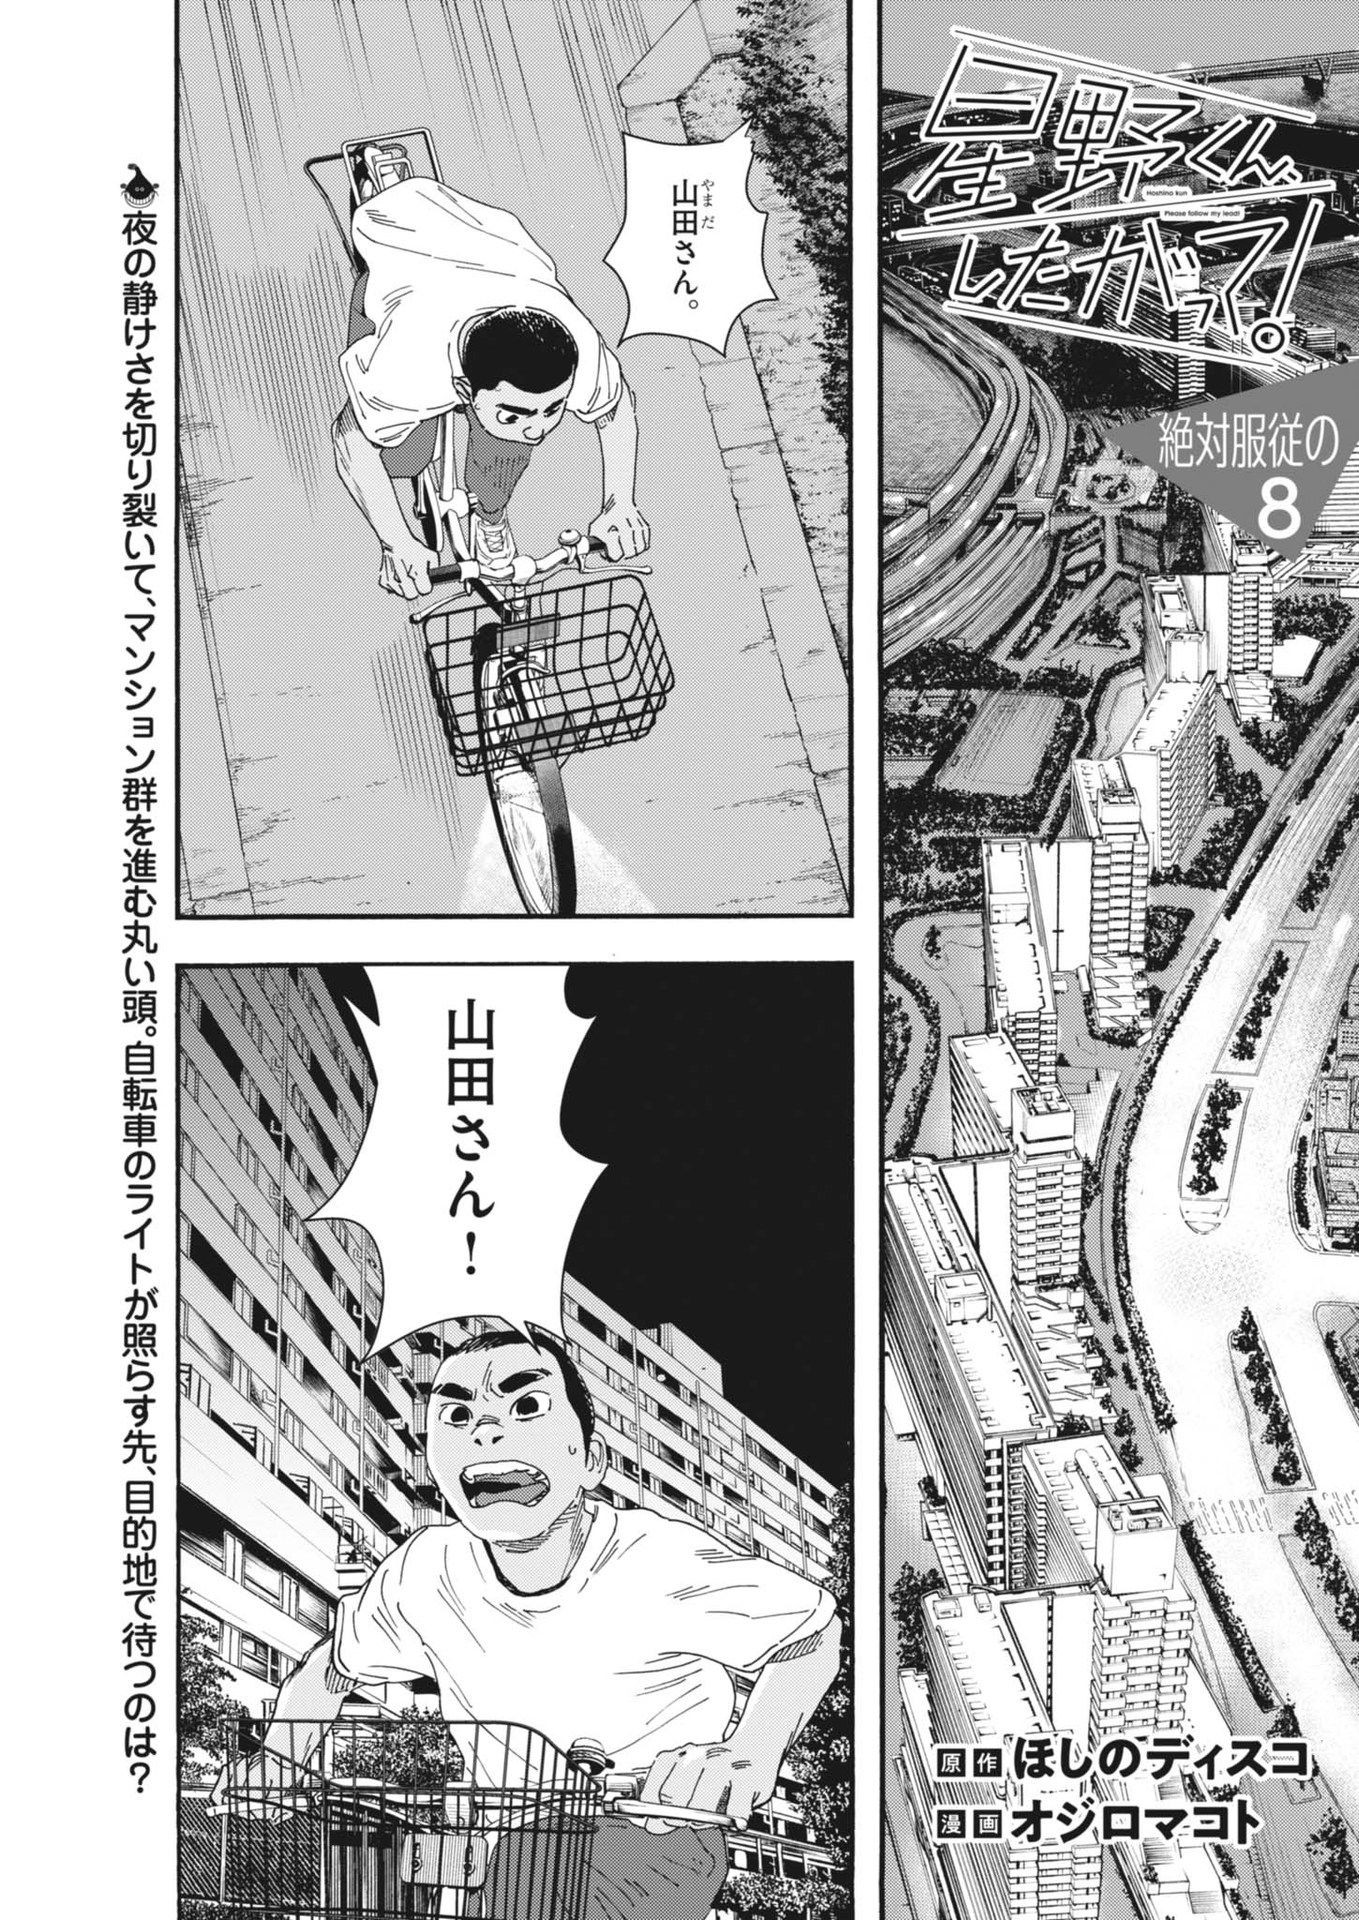 Hoshino-kun, Shitagatte! - Chapter 8 - Page 1